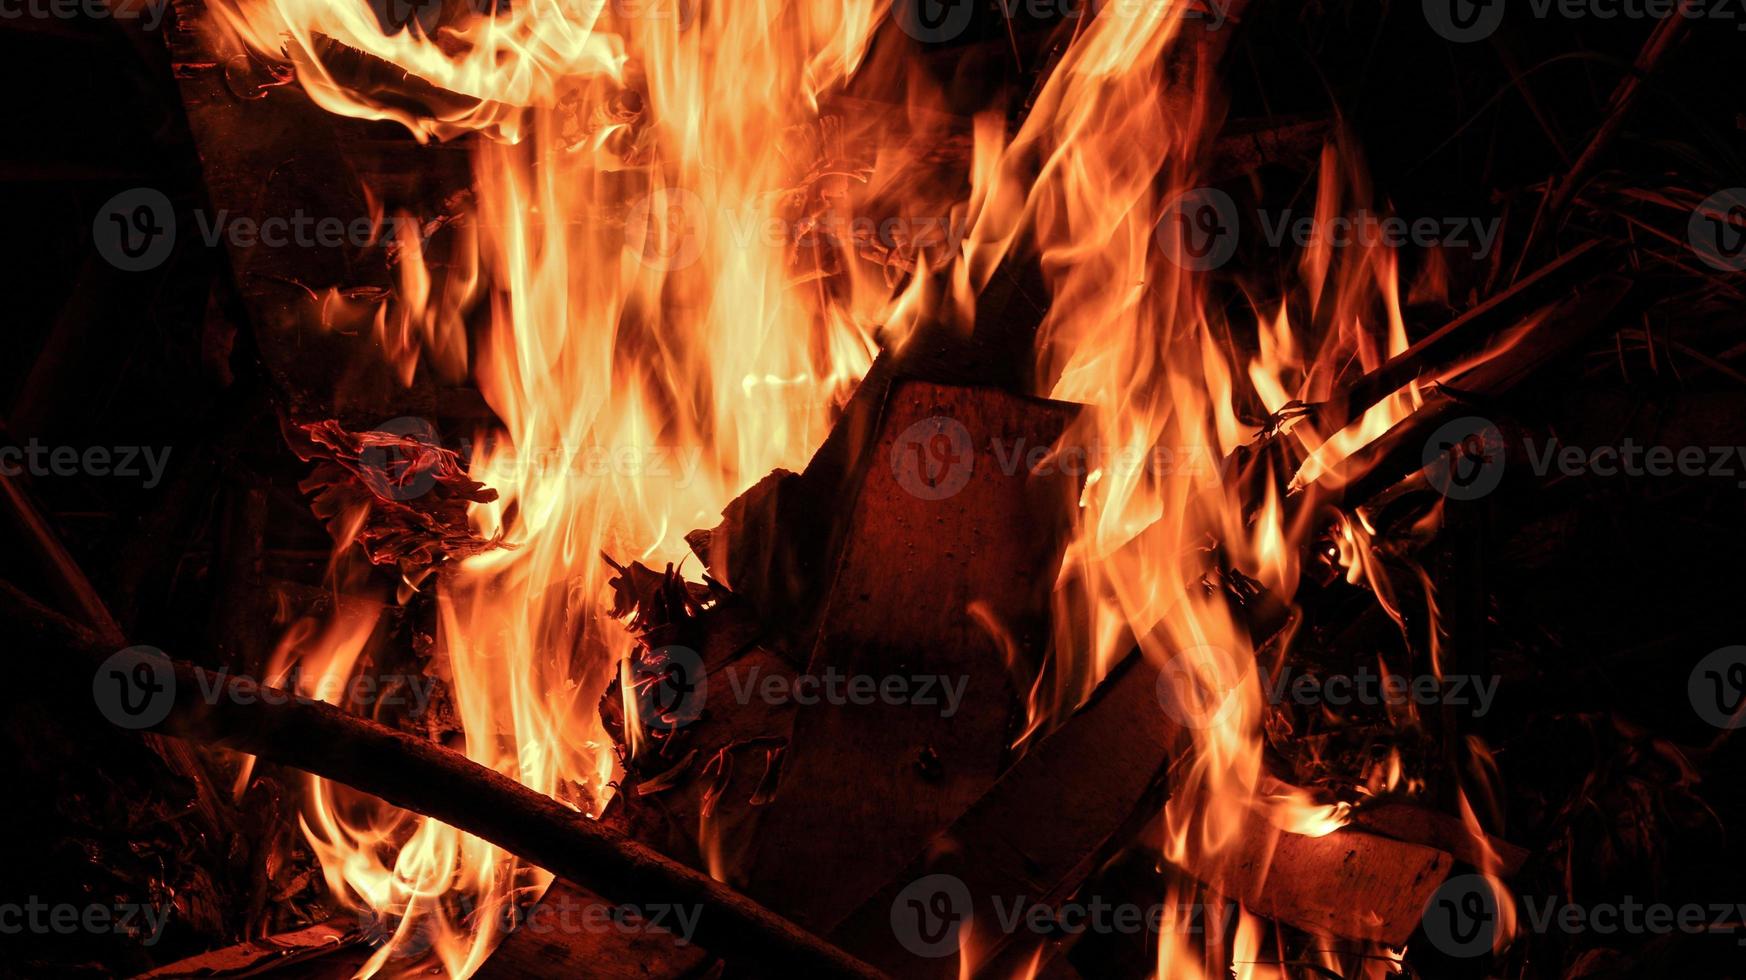 fuego ardiente y humo con llamas ardiendo foto